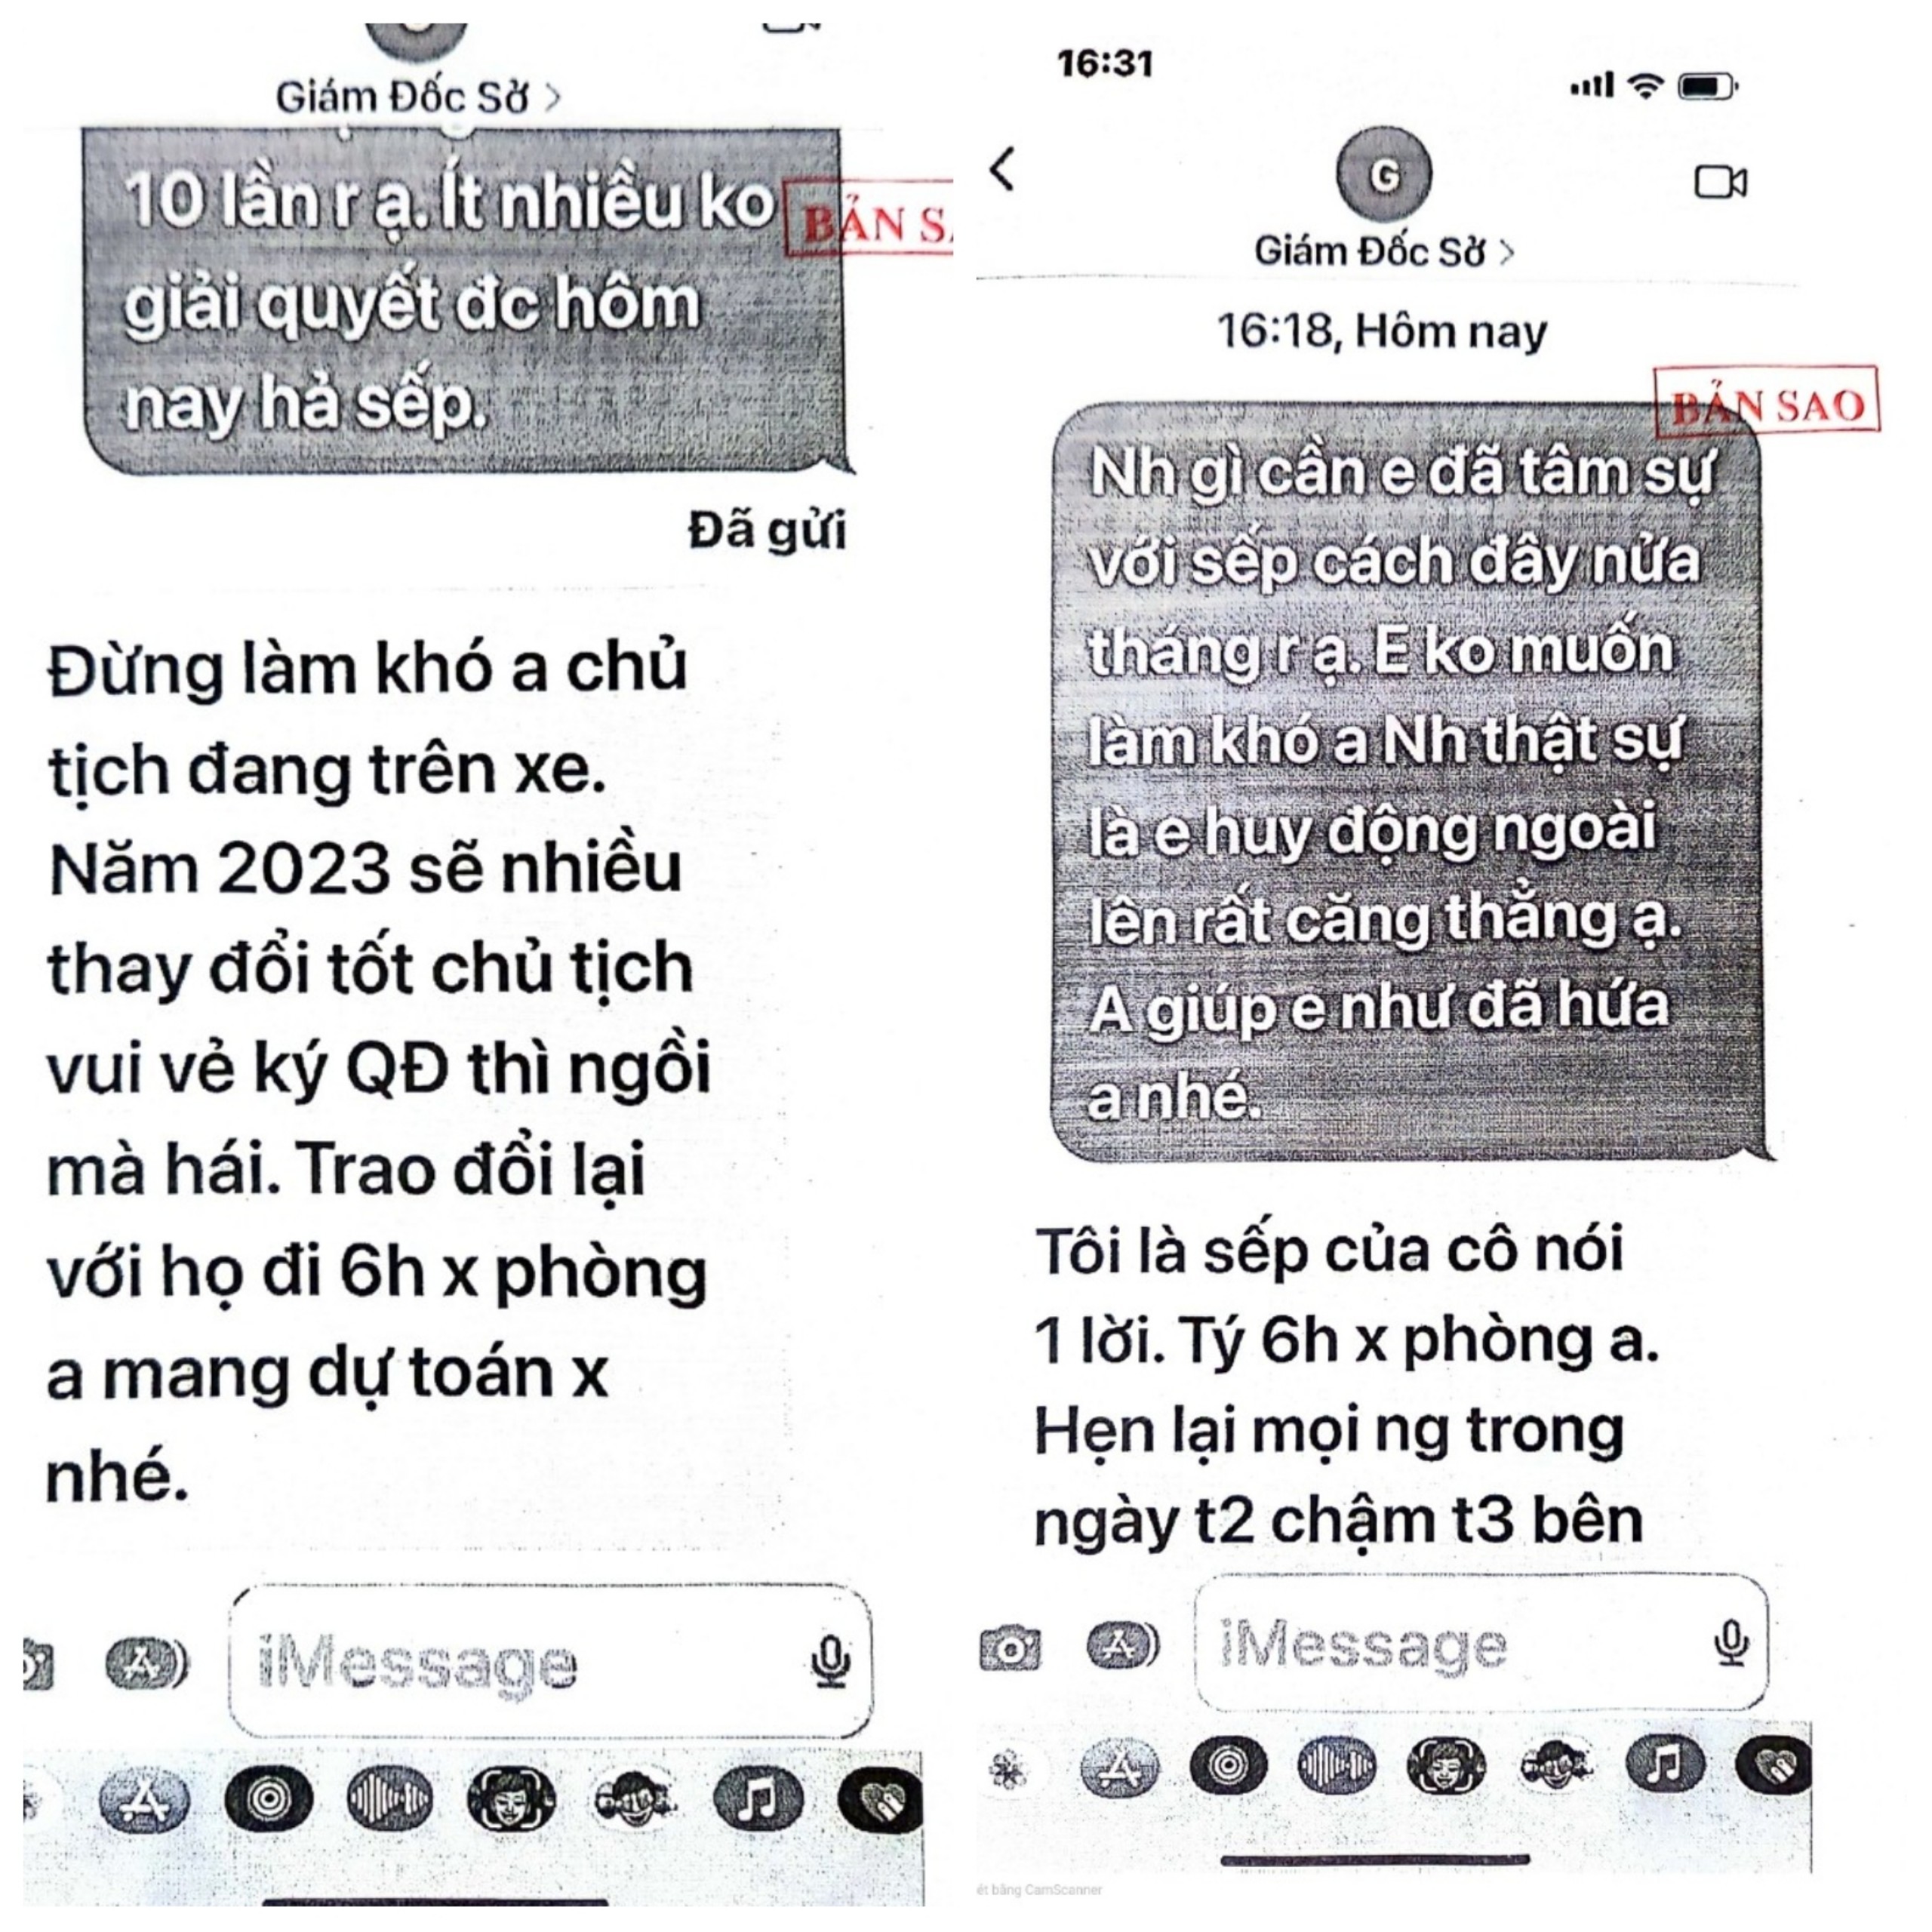 Một số tin nhắn của Giám đốc Sở tài chính do bà Tú tự mạo ra để lừa gạt ông Công